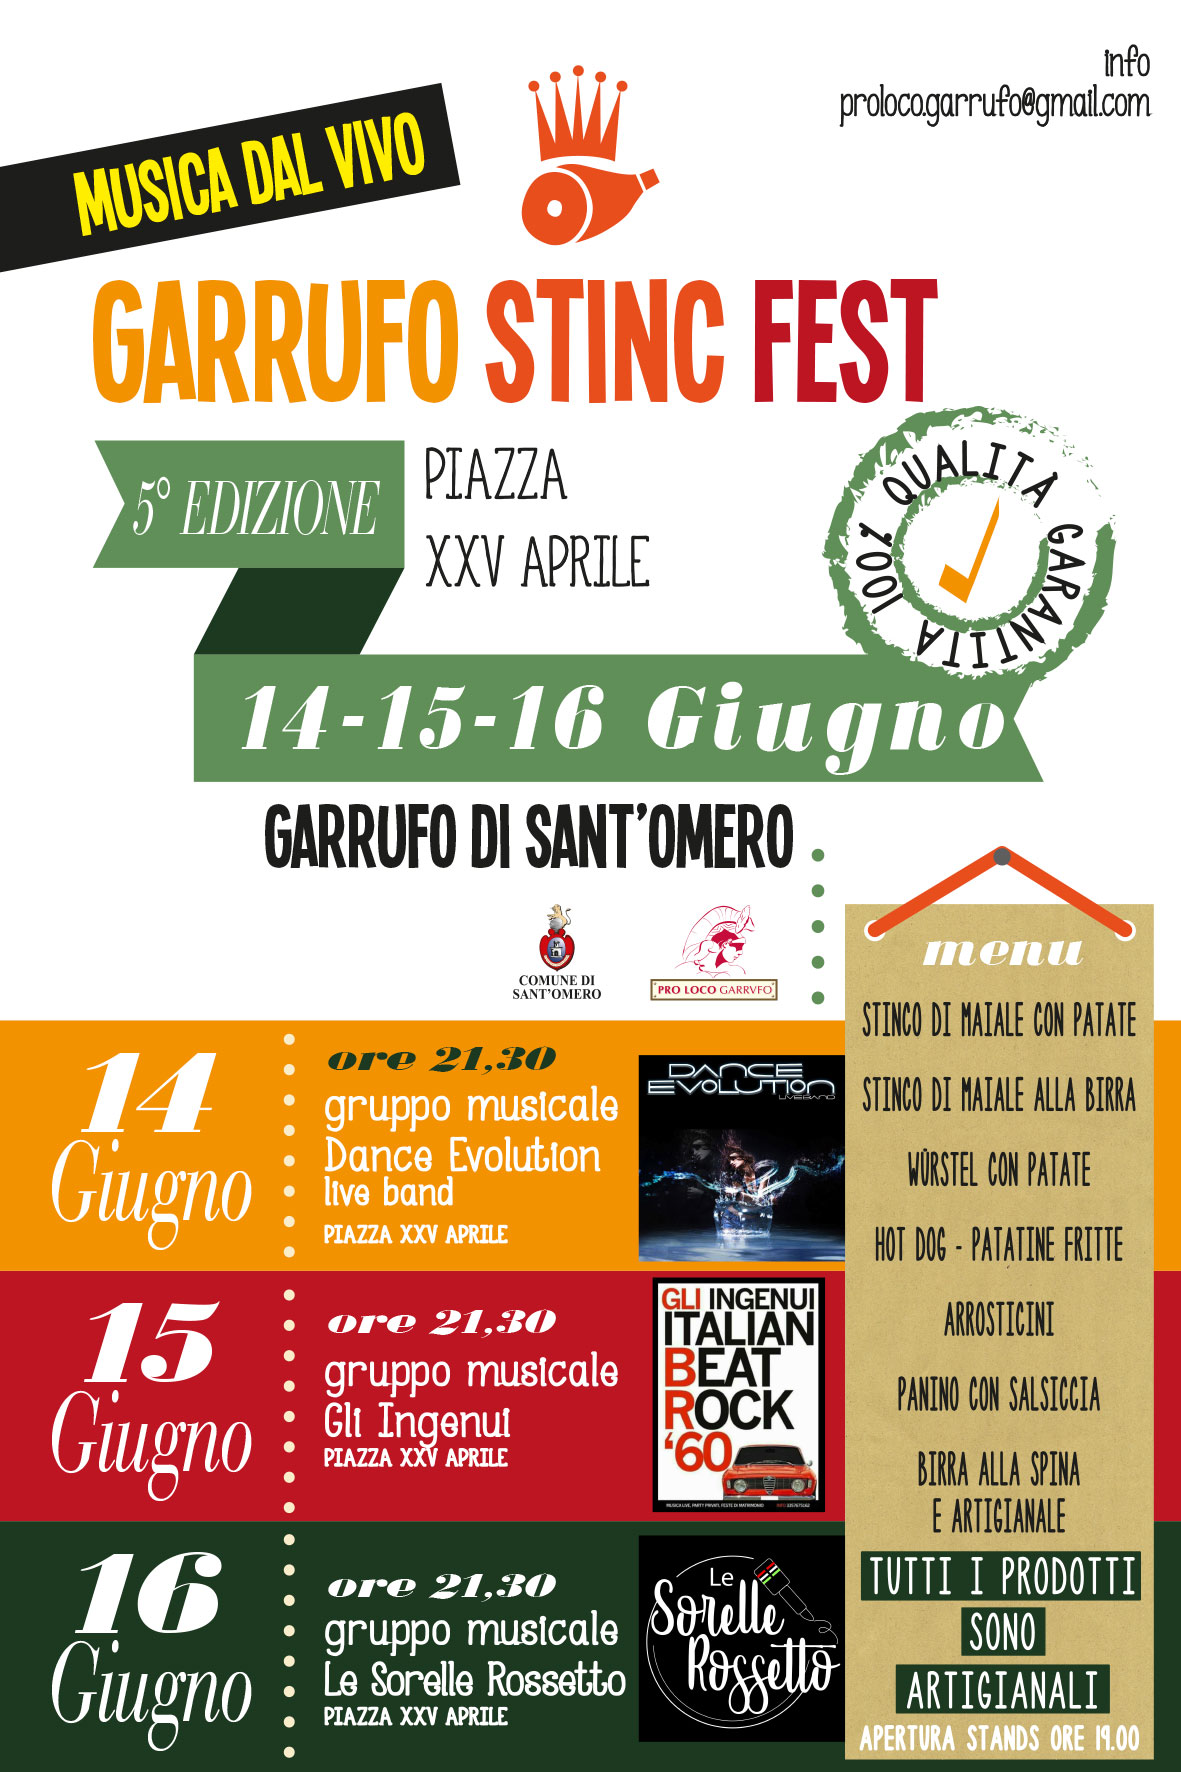 GARRUFO STINC FEST 2019